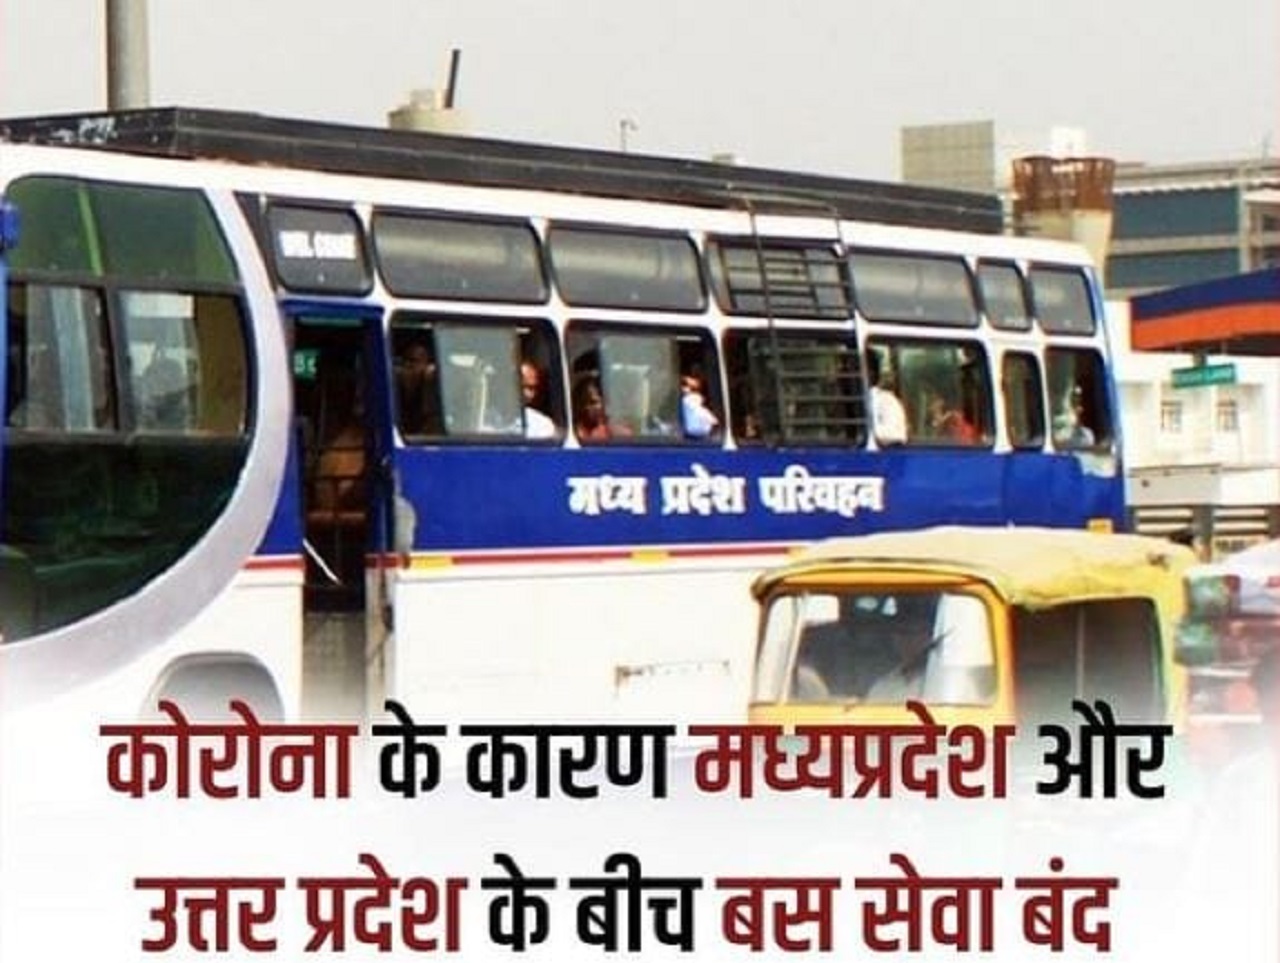 MP : उत्तर प्रदेश और मध्यप्रदेश के बीच अंतर्राज्जीय बस परिवहन सेवा स्थगित